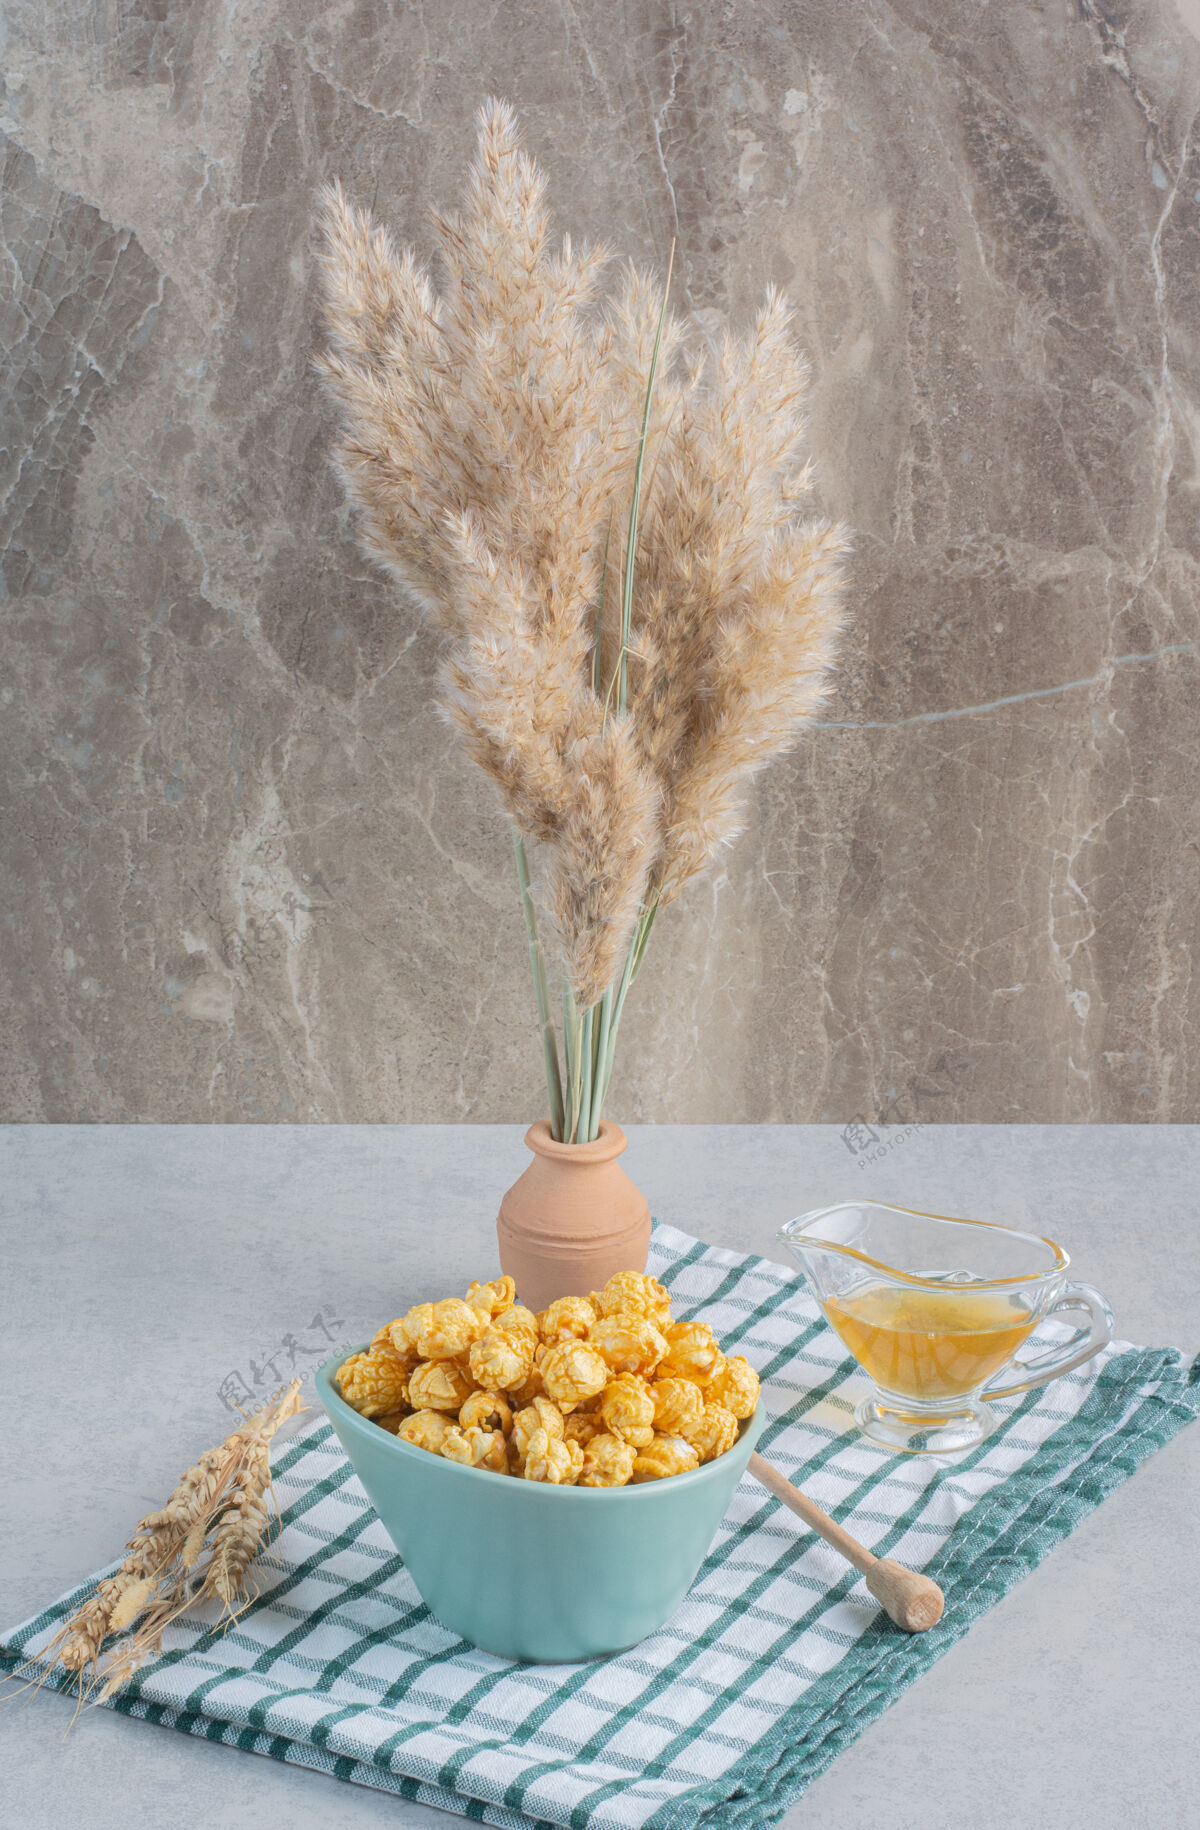 谷物一碗焦糖爆米花 一杯蜂蜜 一把蜂蜜勺和麦秆放在陶瓷花瓶里 放在大理石表面的毛巾上蜂蜜勺蜂蜜玻璃杯